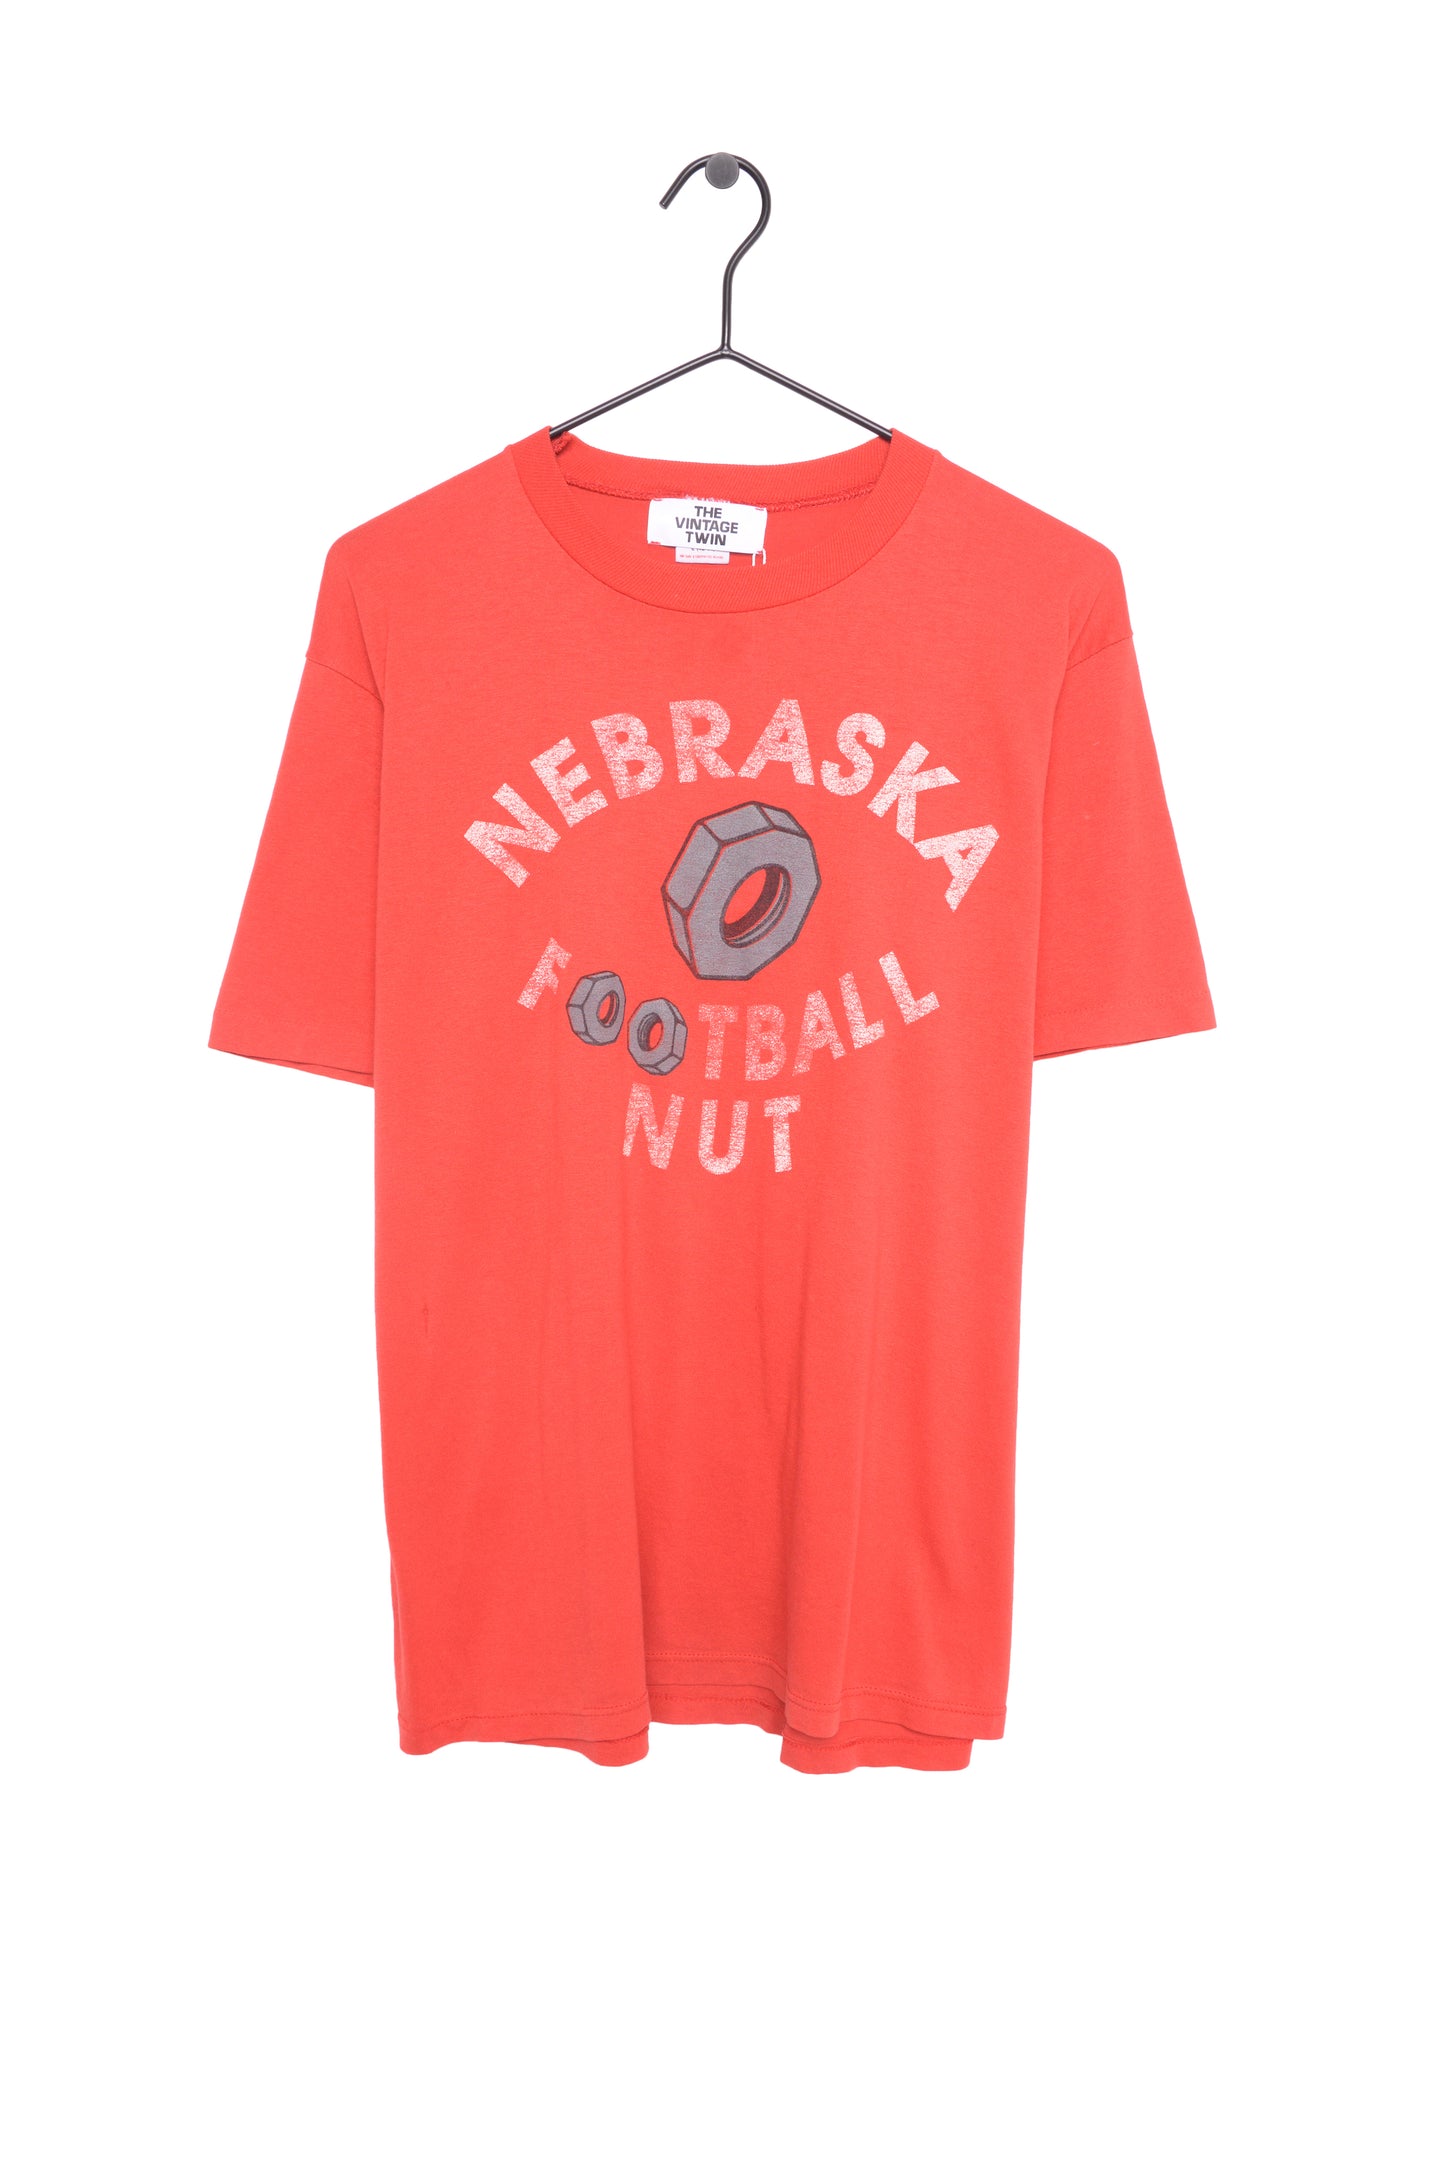 Nebraska Cornhuskers Football Nut Tee USA